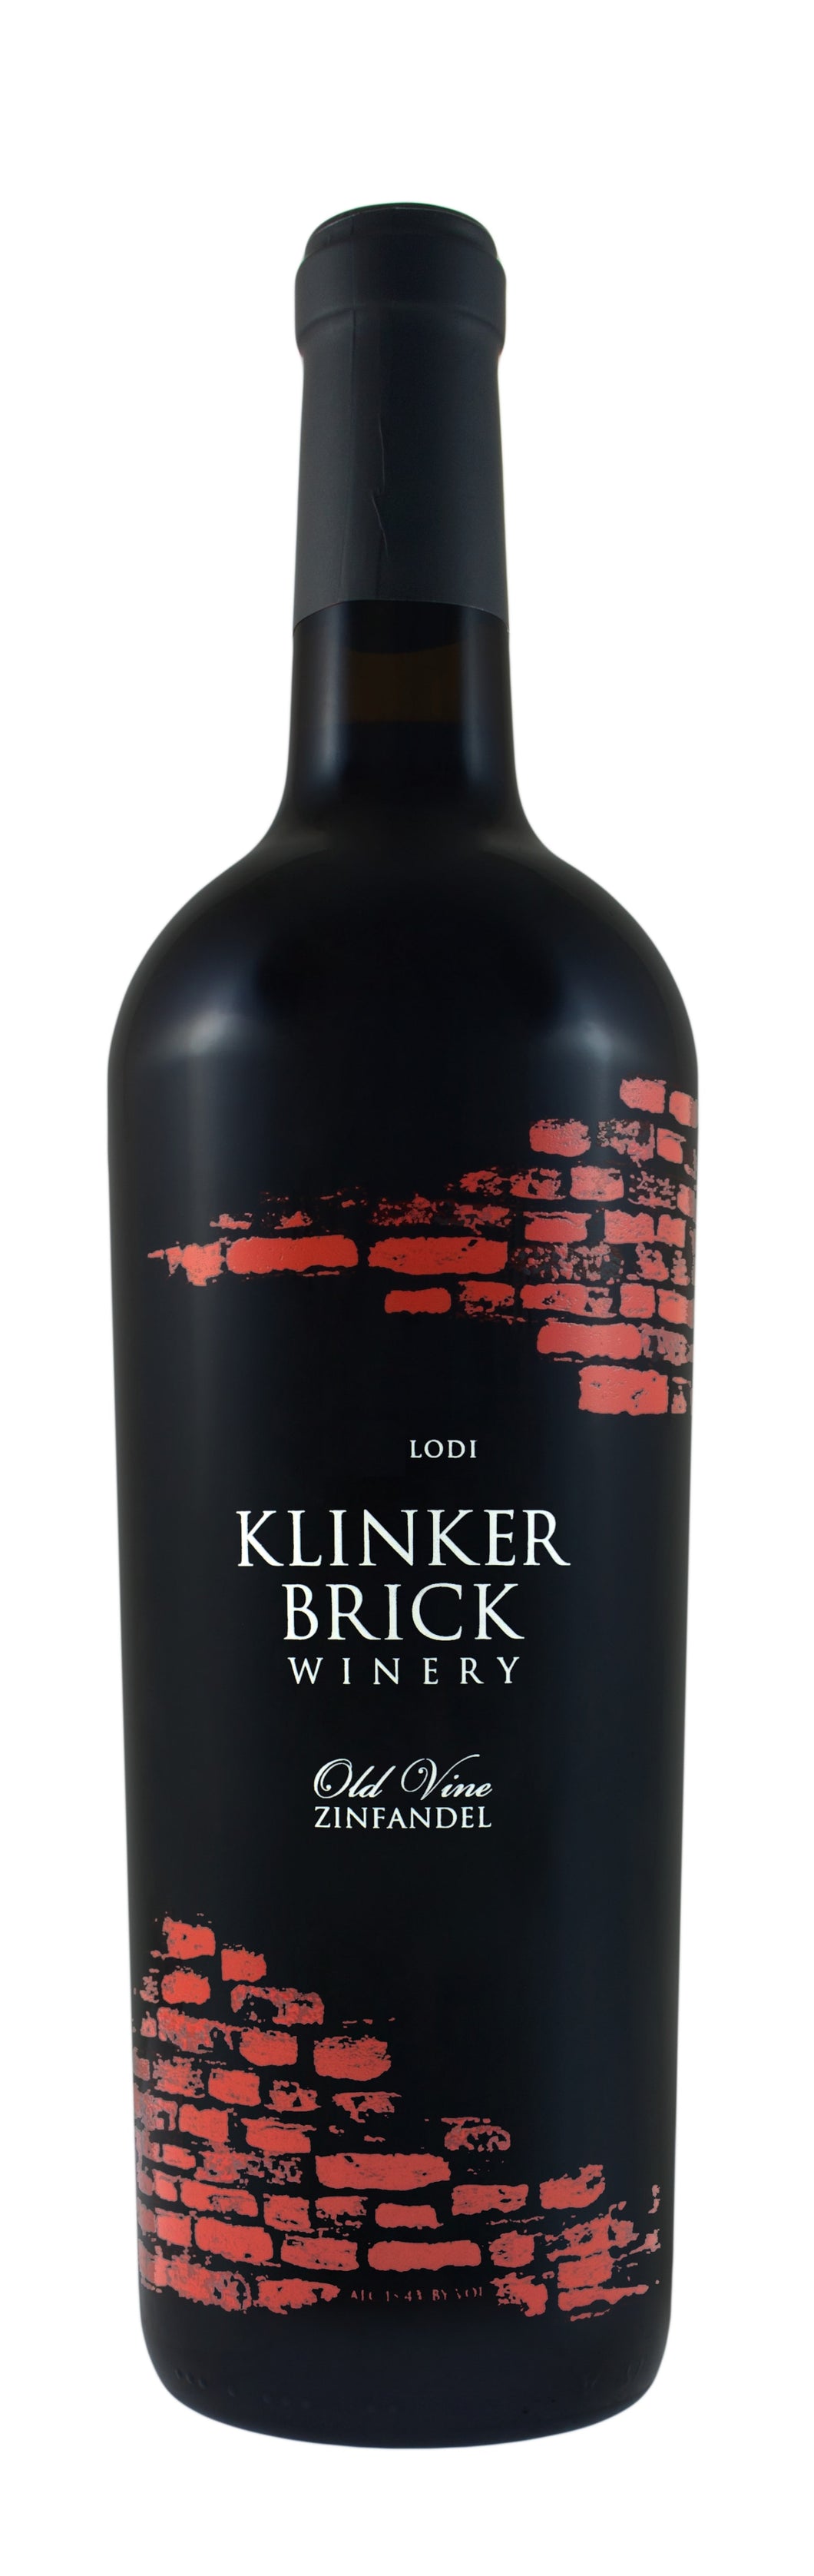 Klinker Brick Old Vine Zinfandel